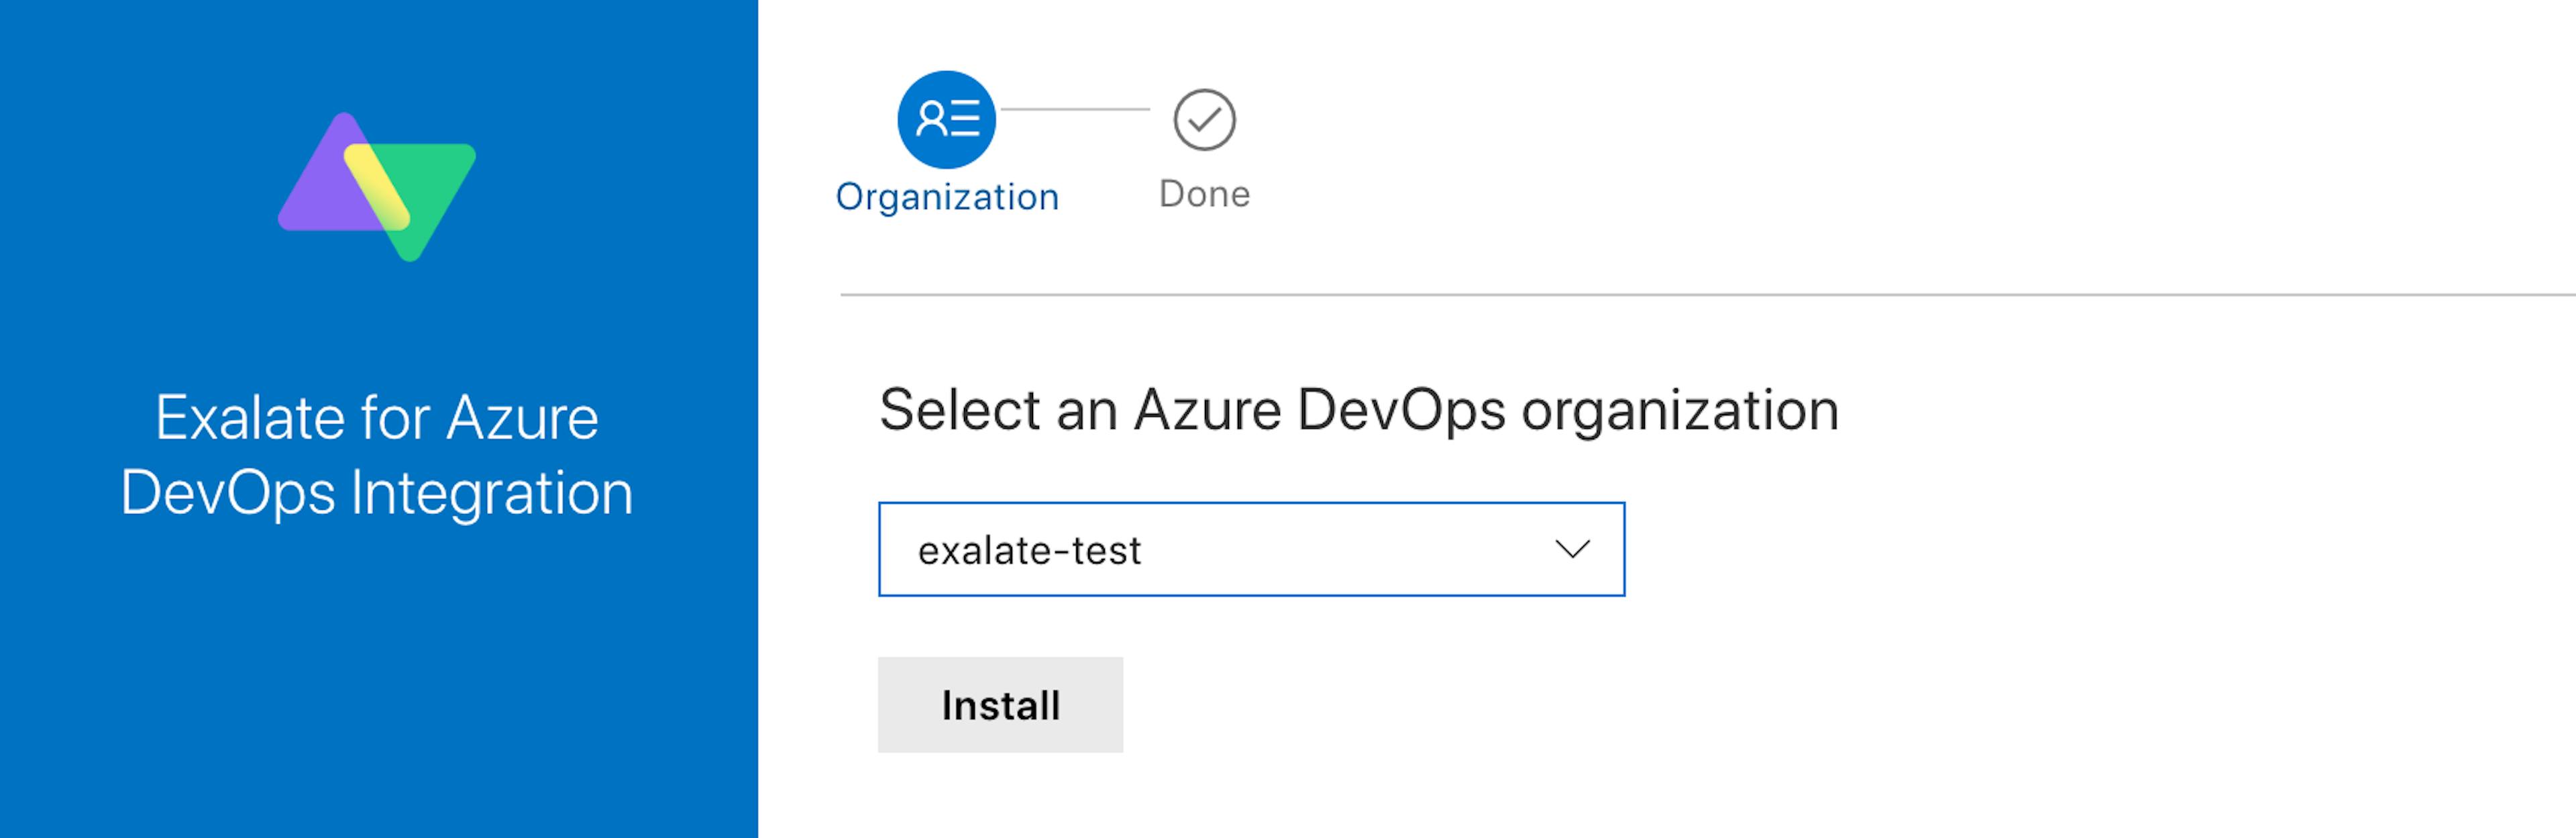 select an organization for an Azure DevOps integration